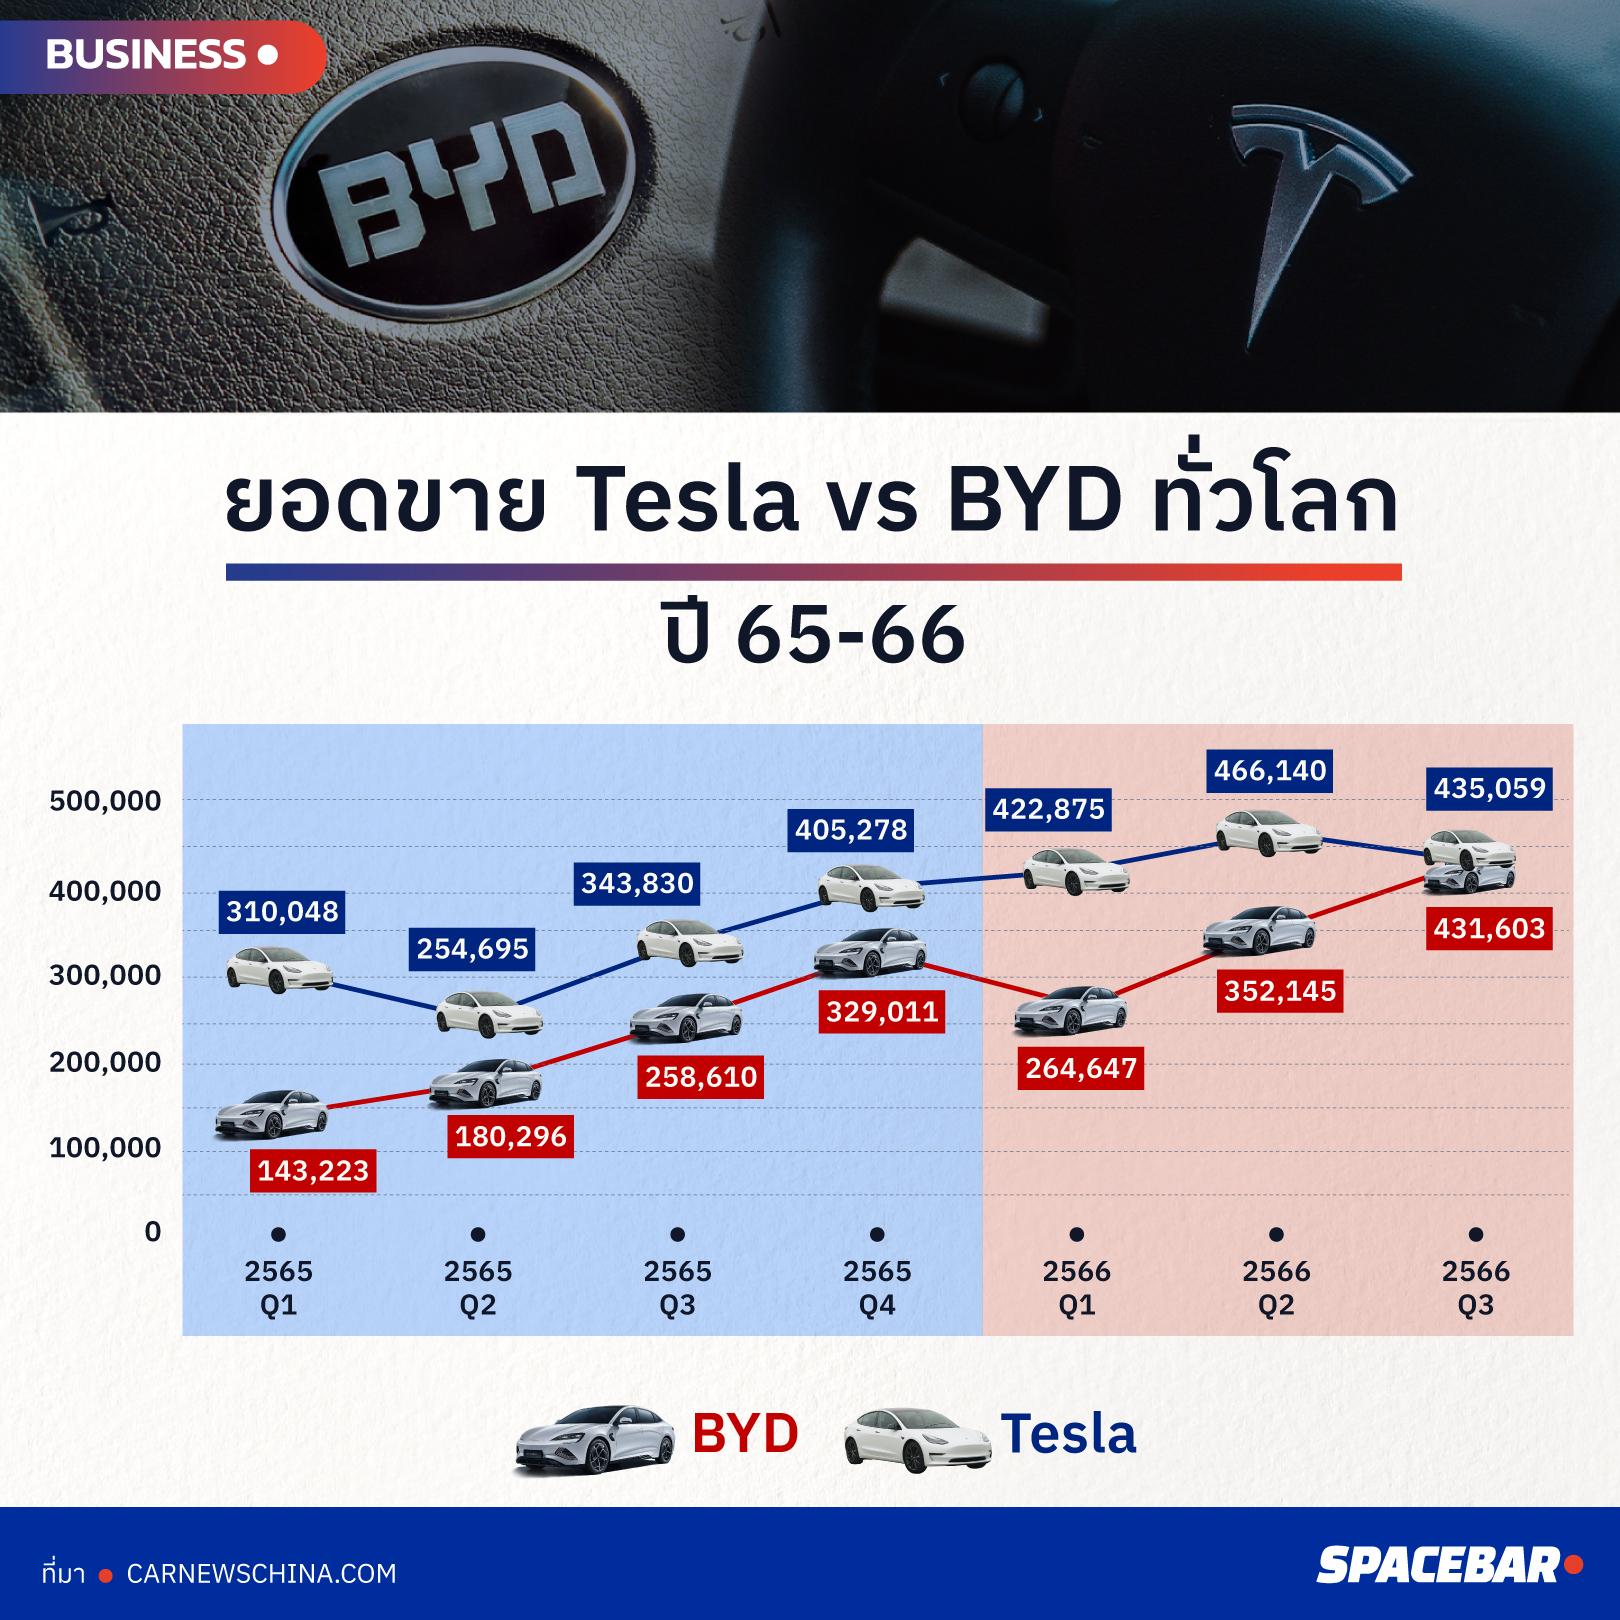 ยอดขาย, EV, รถยนต์ไฟฟ้า, รถ EV, อีวี, ประเทศไทย, Tesla, เทสล่า, BYD, ลดราคา, สงครามราคา,แข่งขัน